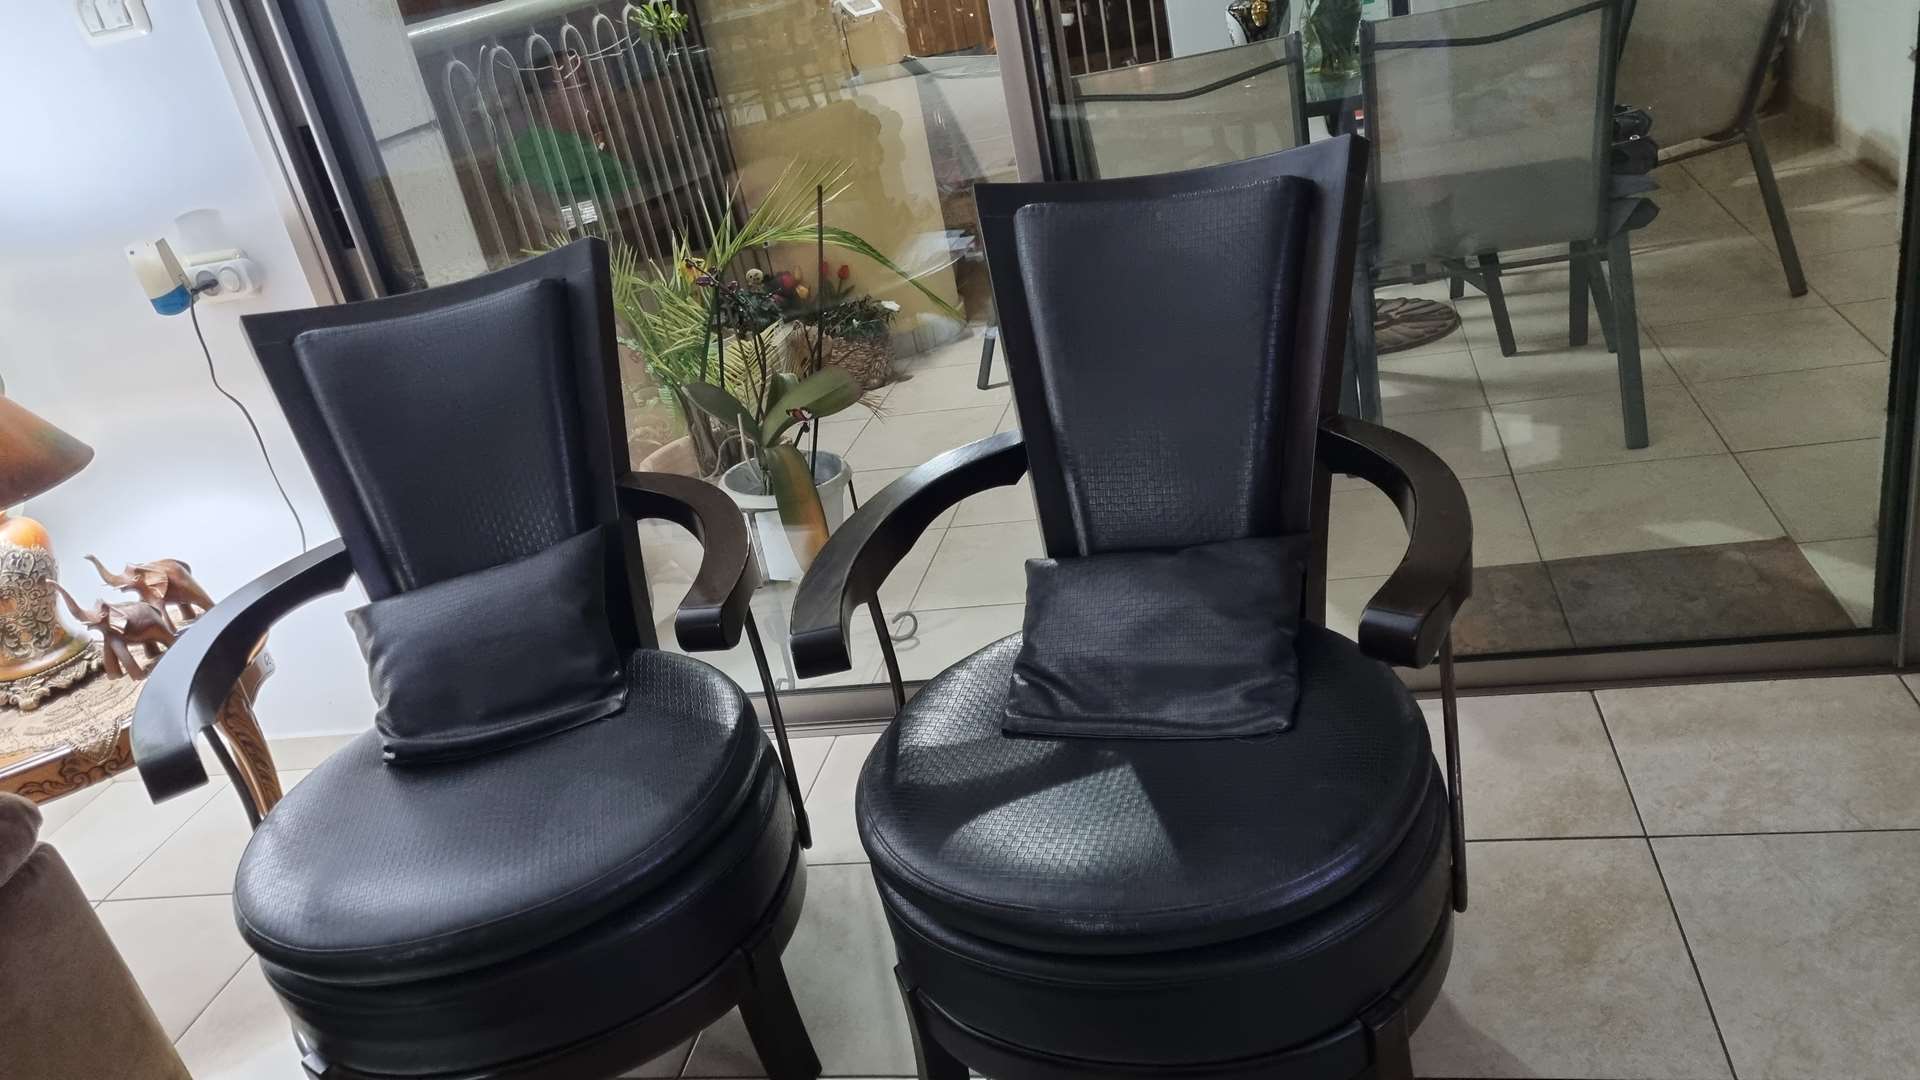 תמונה 2 ,2 כורסאות דמוי עור למכירה בגבעתיים ריהוט  כורסאות